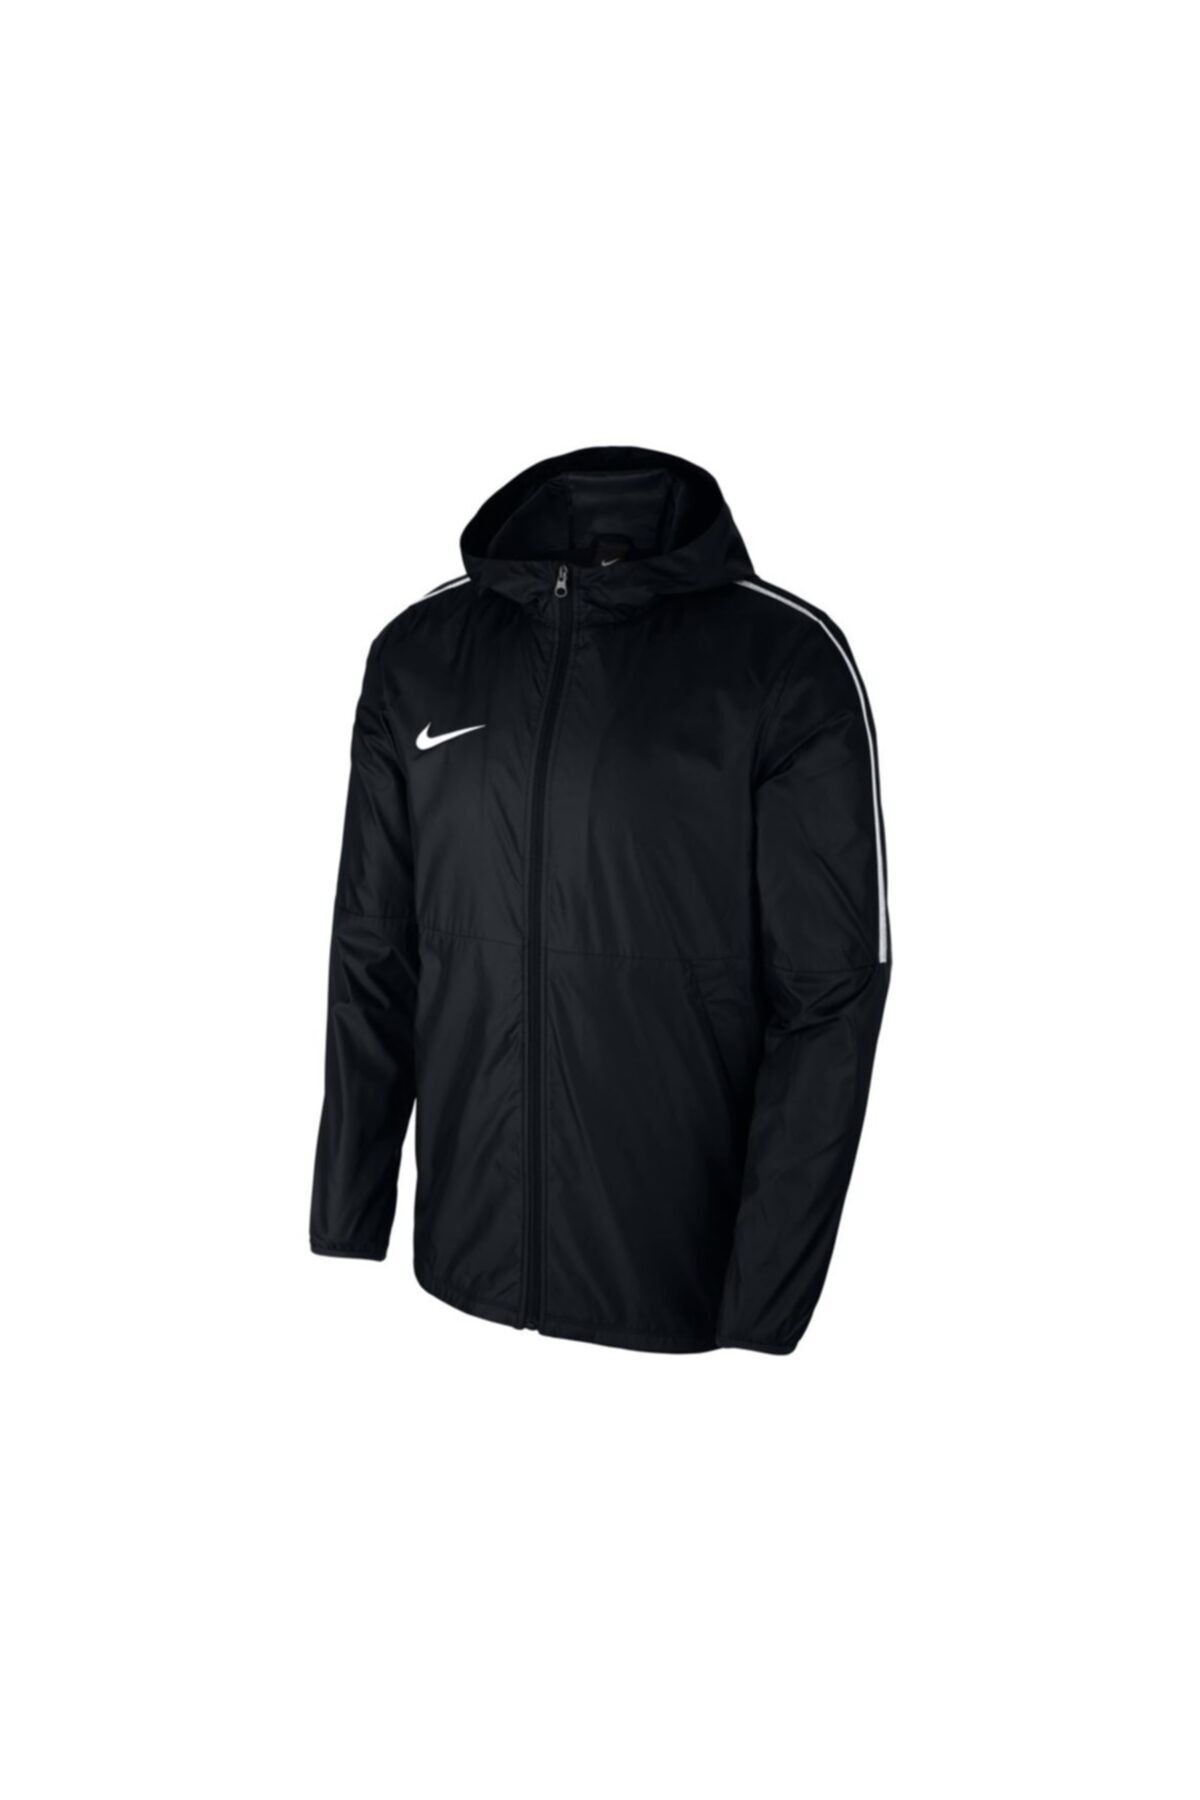 Nike Dry Park 18 Yağmurluk Ceket Genç Çocuk (siyah, S)